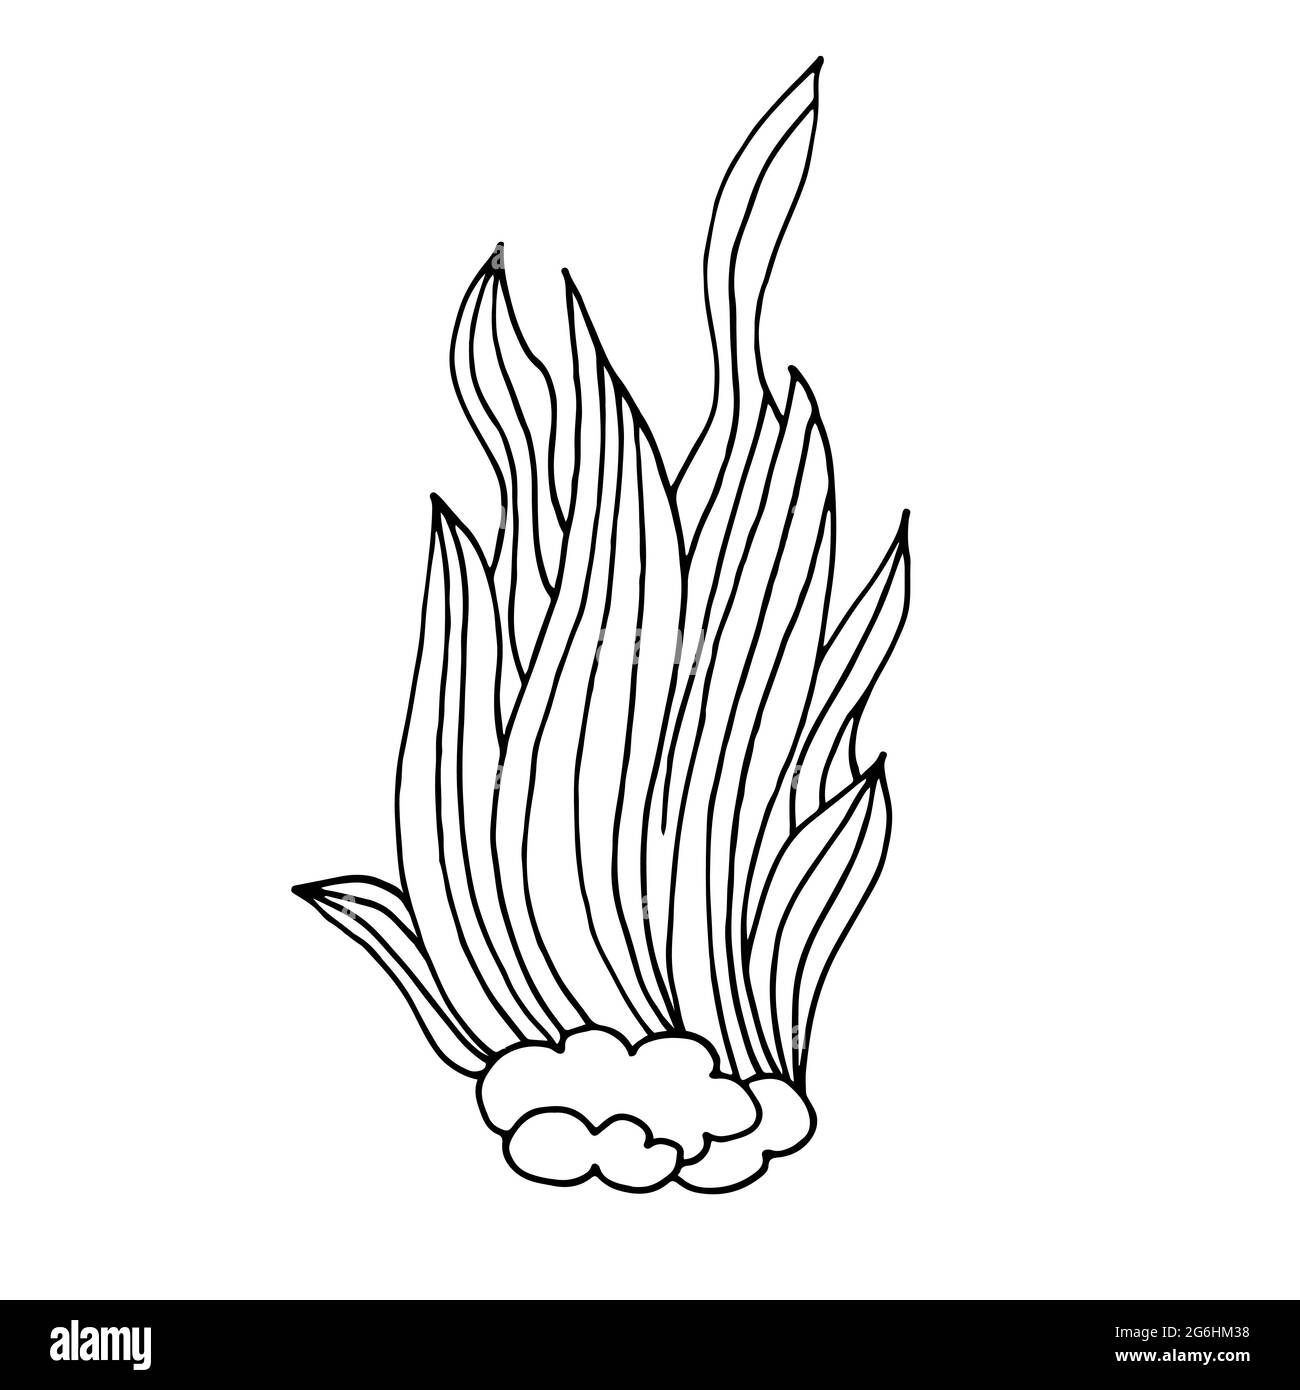 Kontur. Algenbusch. Marine Thema Symbol in Hand zeichnen Stil. Niedliche kindliche Illustration des Meeres Leben. Symbol, Abzeichen, Aufkleber, Aufdruck für Kleidung Stock Vektor